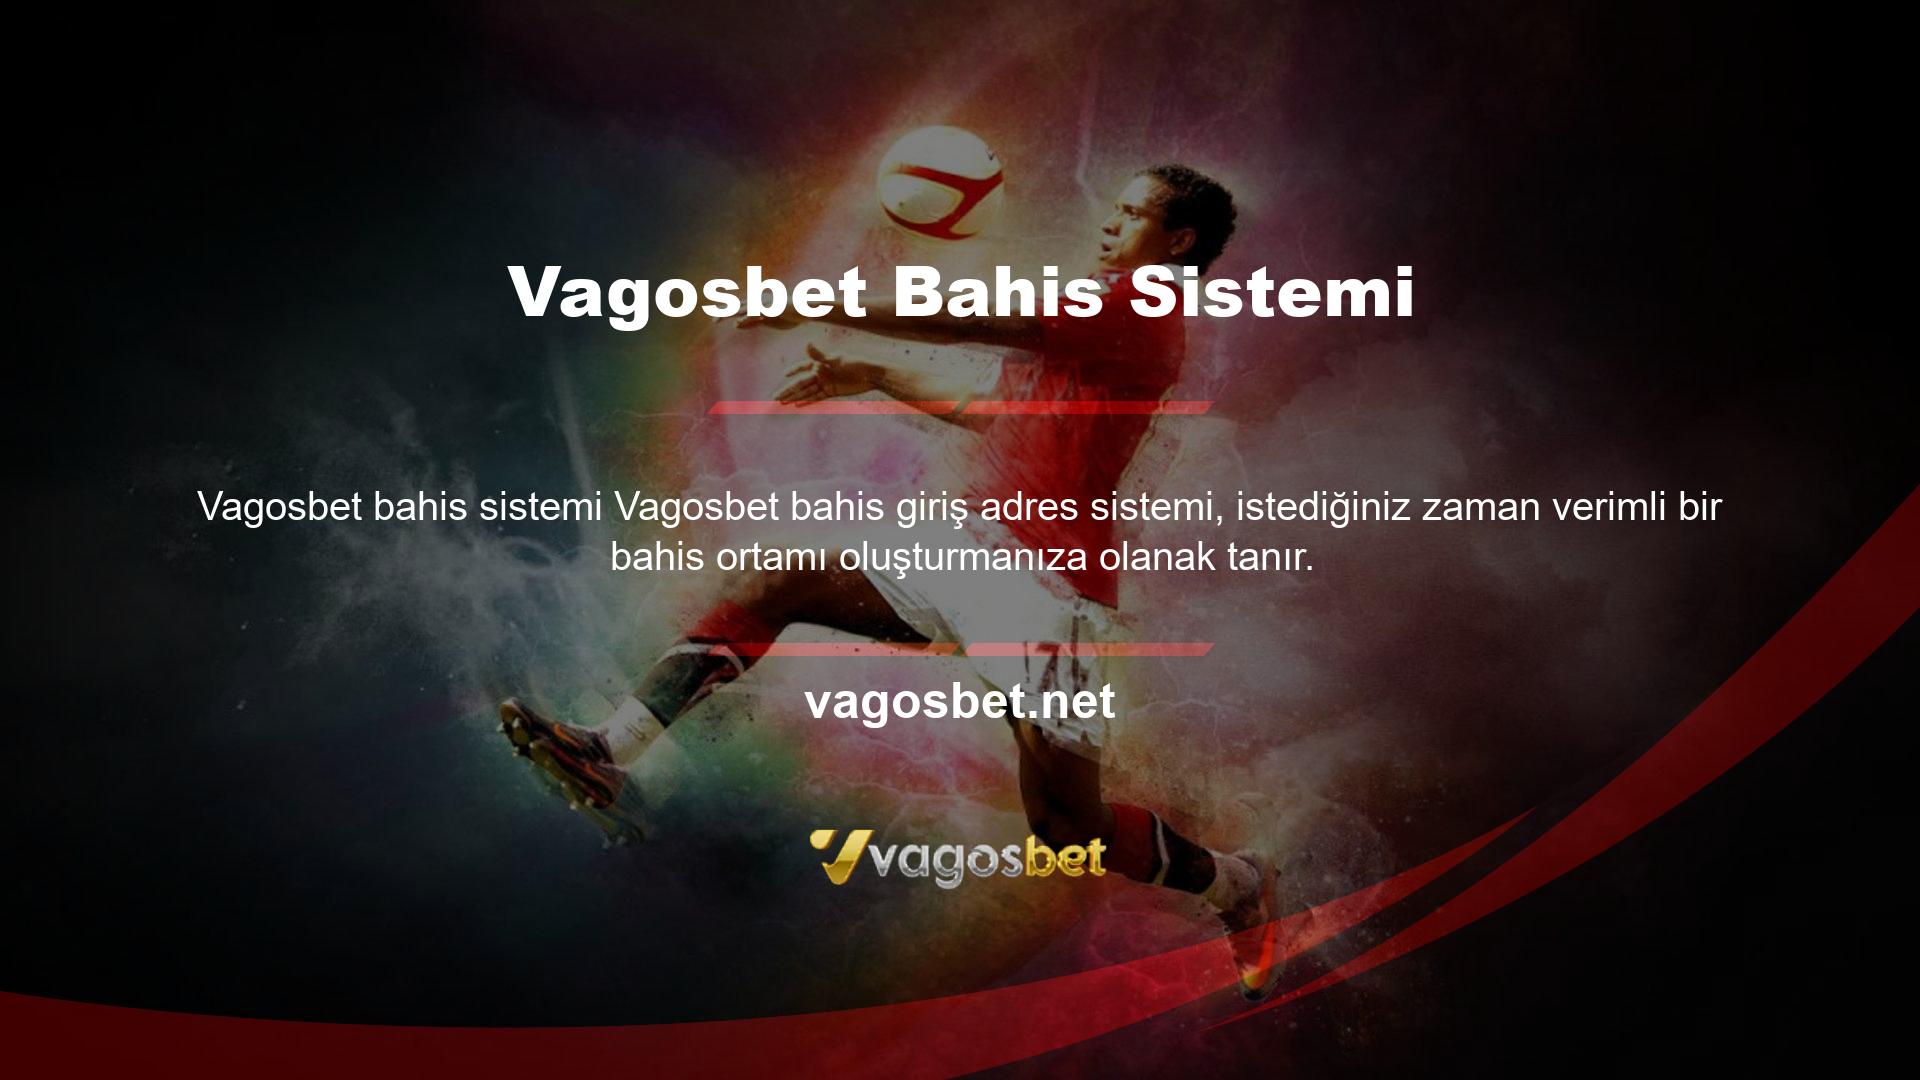 Vagosbet, ortam ihtiyaçlarınızı değerlendirebilecek en iyi web sitelerinden biridir